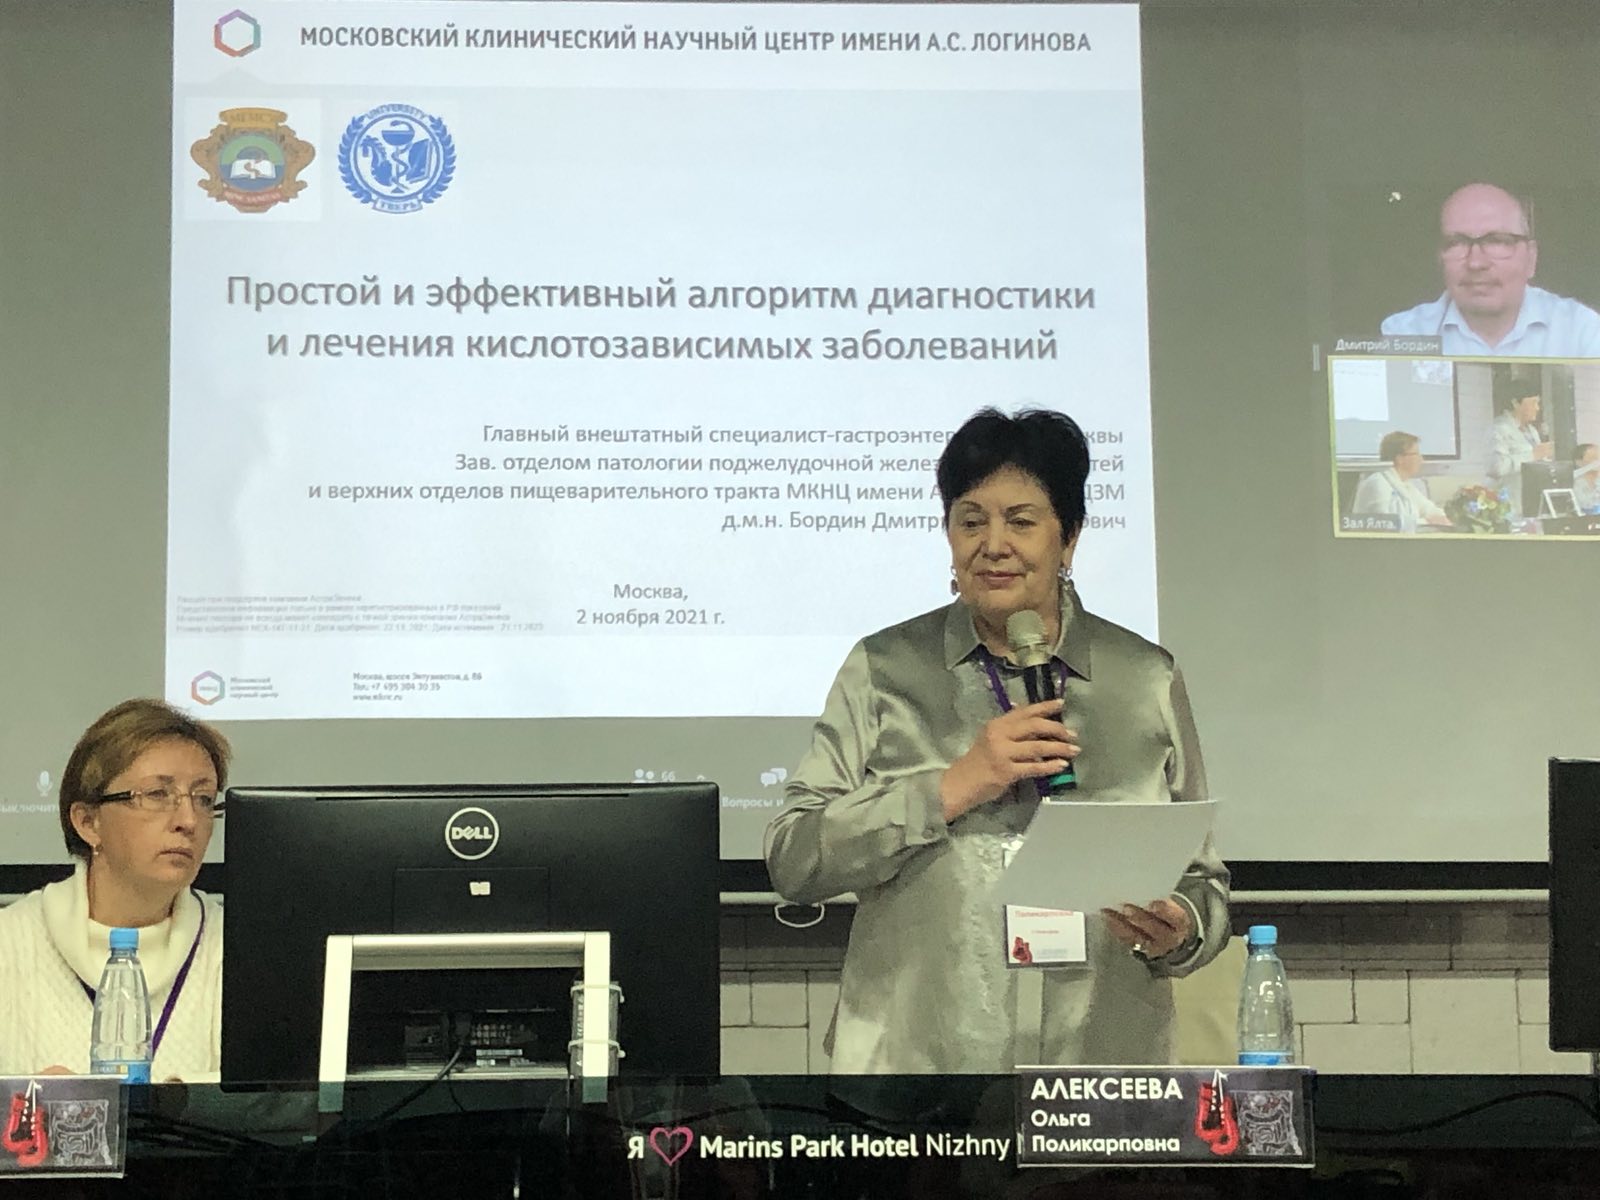 В Нижнем Новгороде состоялся XXII Межрегиональный медицинский Форум акушеров-гинекологов ПФО «Неделя женского здоровья — 2021»